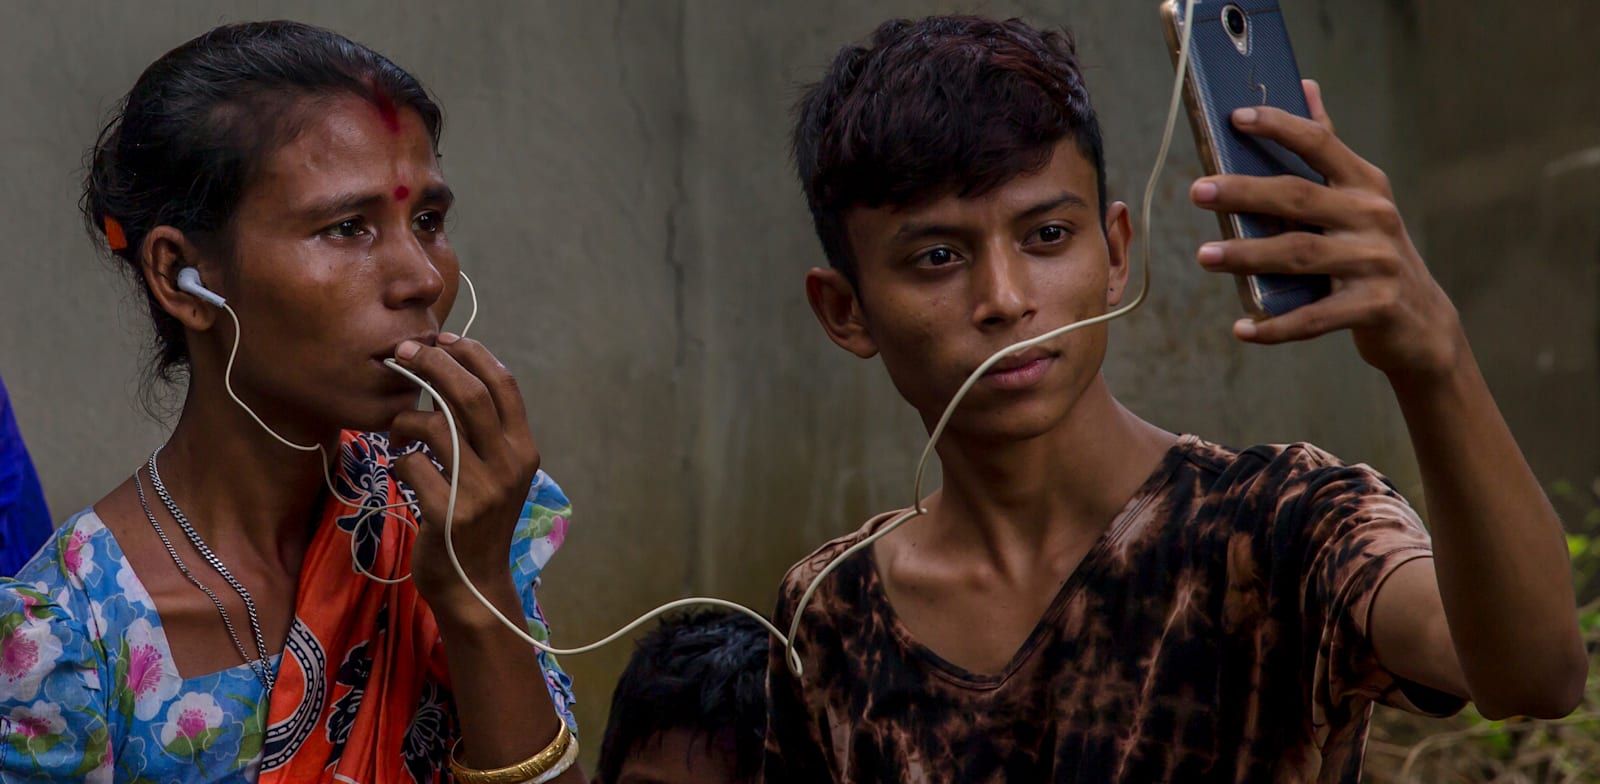 הינדים שנמלטו ממיאנמר במחנה פליטים בבנגלדש / צילום: Associated Press, Dar Yasin